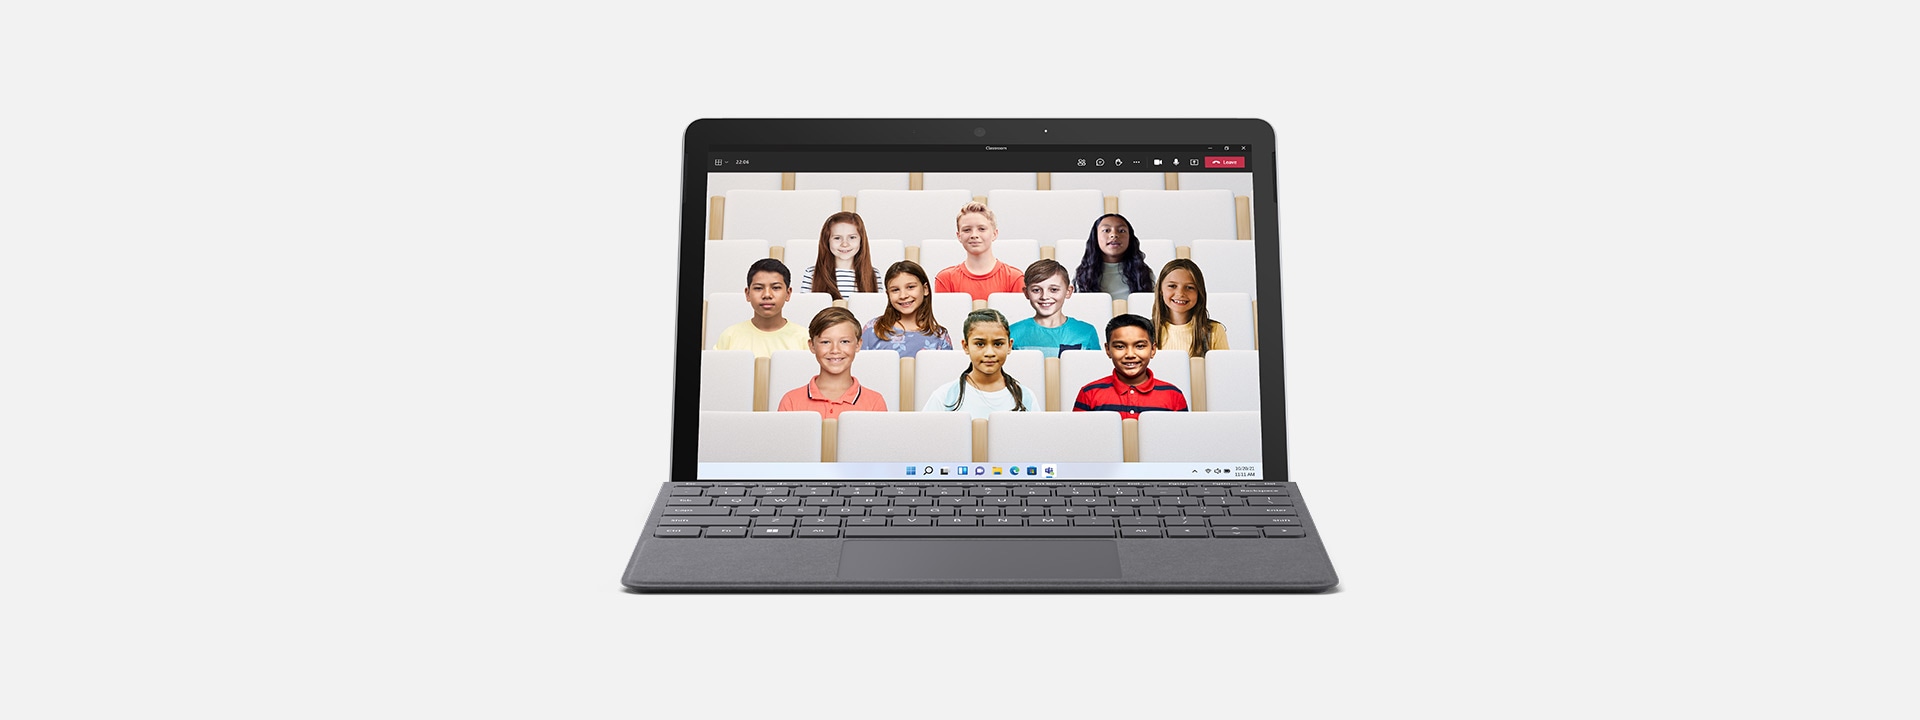 جهاز Surface Go 3 ككمبيوتر محمول يعرض إعداد Teams لفصل دراسي.